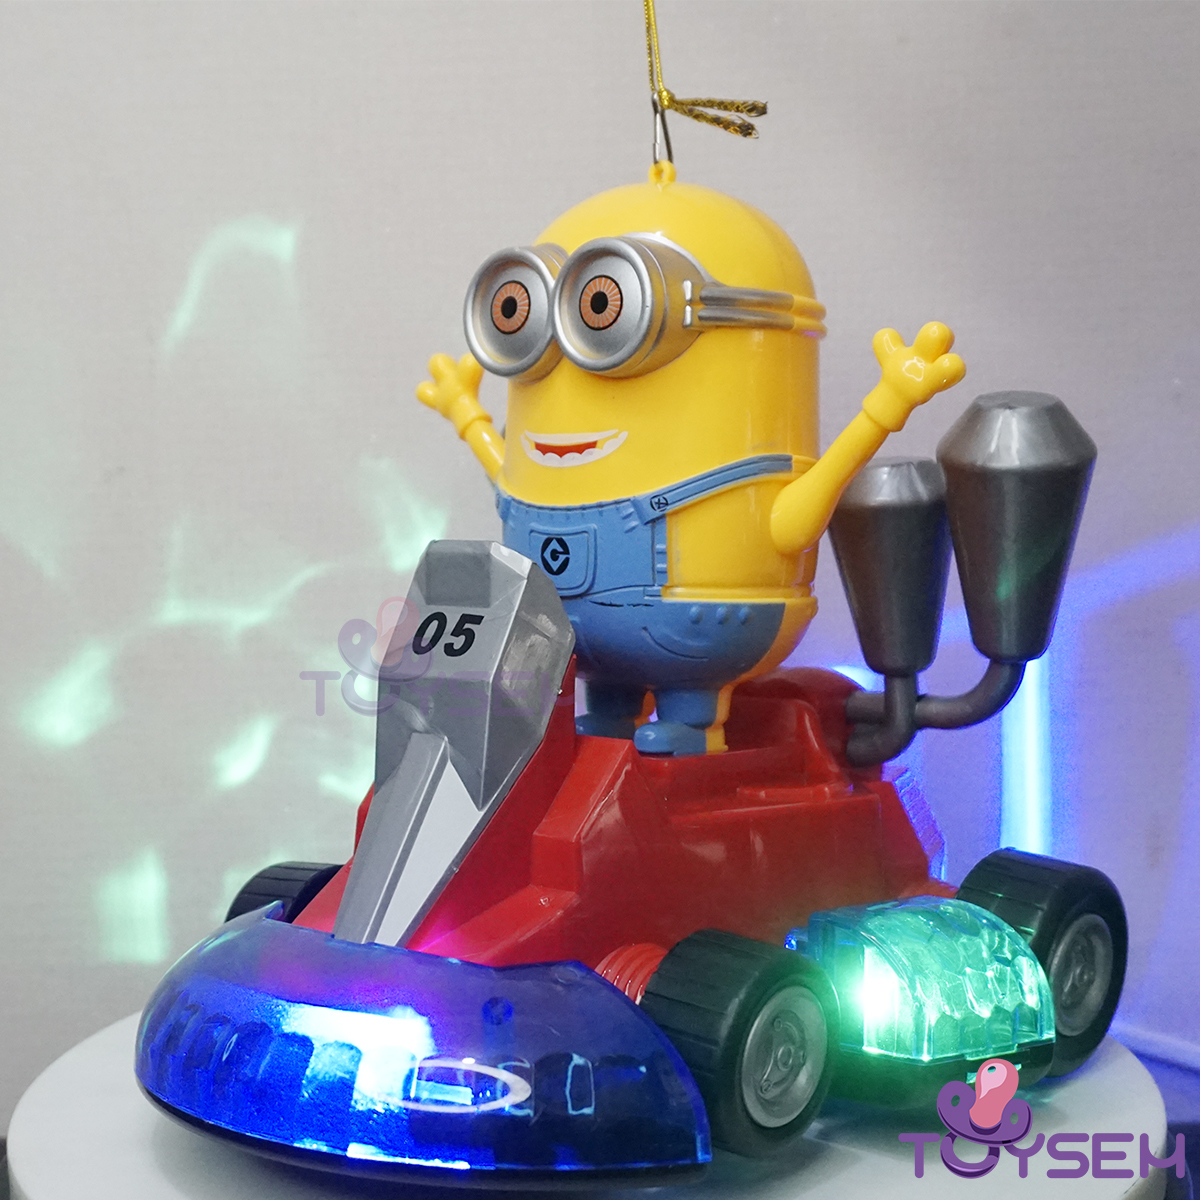 Đồ chơi lồng đèn trung thu xe đua và minions Toysem có đèn và nhạc xoay 360 độ - Quà tặng sinh nhật trung thu cho bé